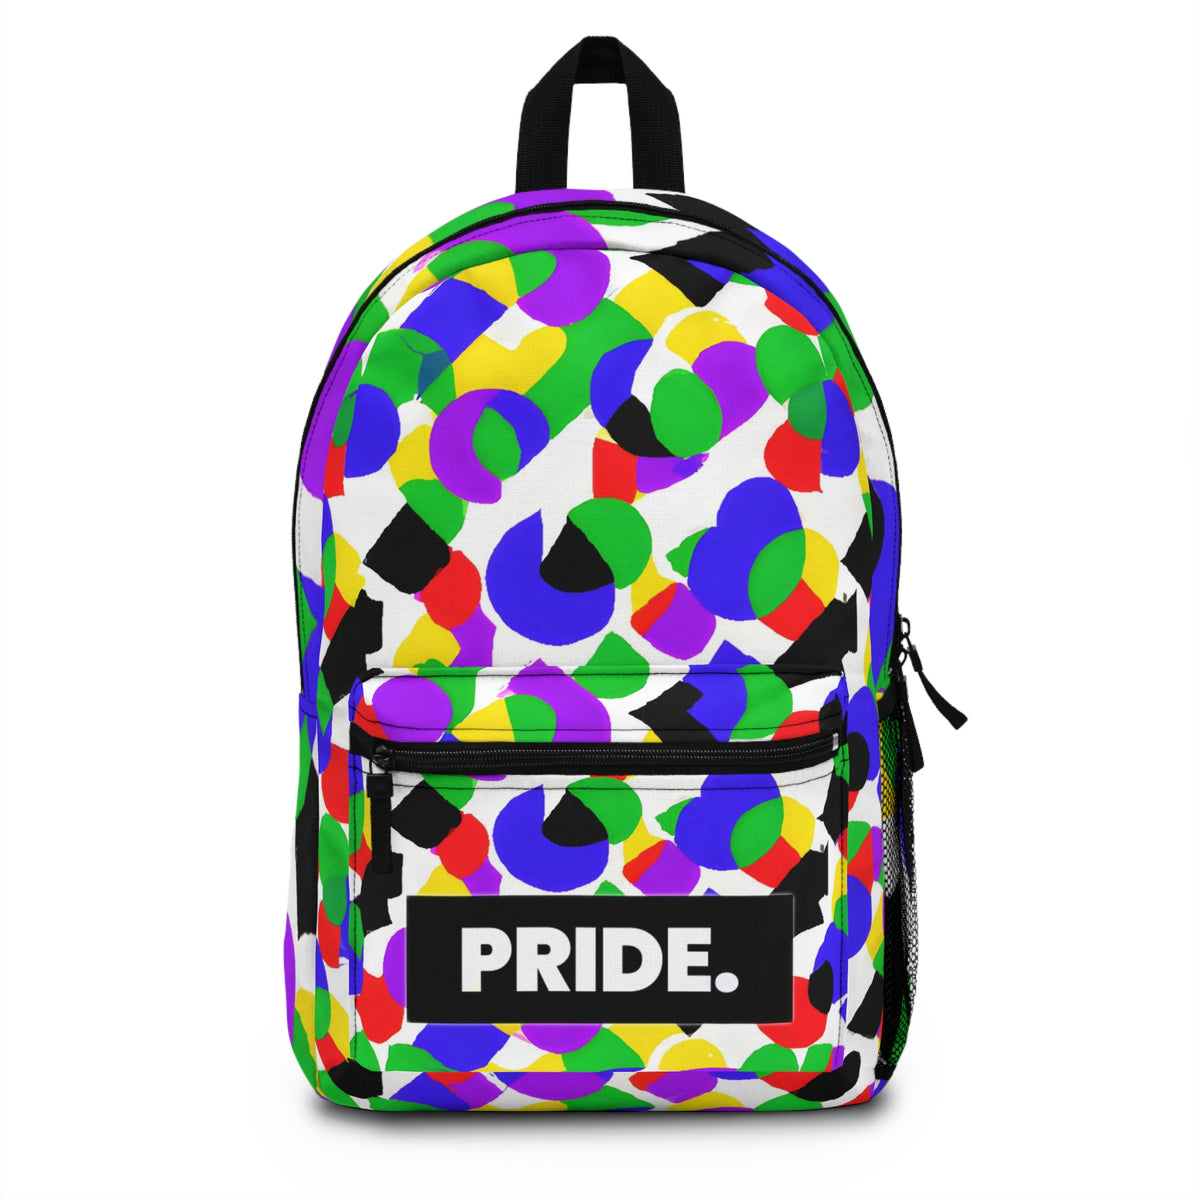 Flamiesta - Gay Pride Backpack